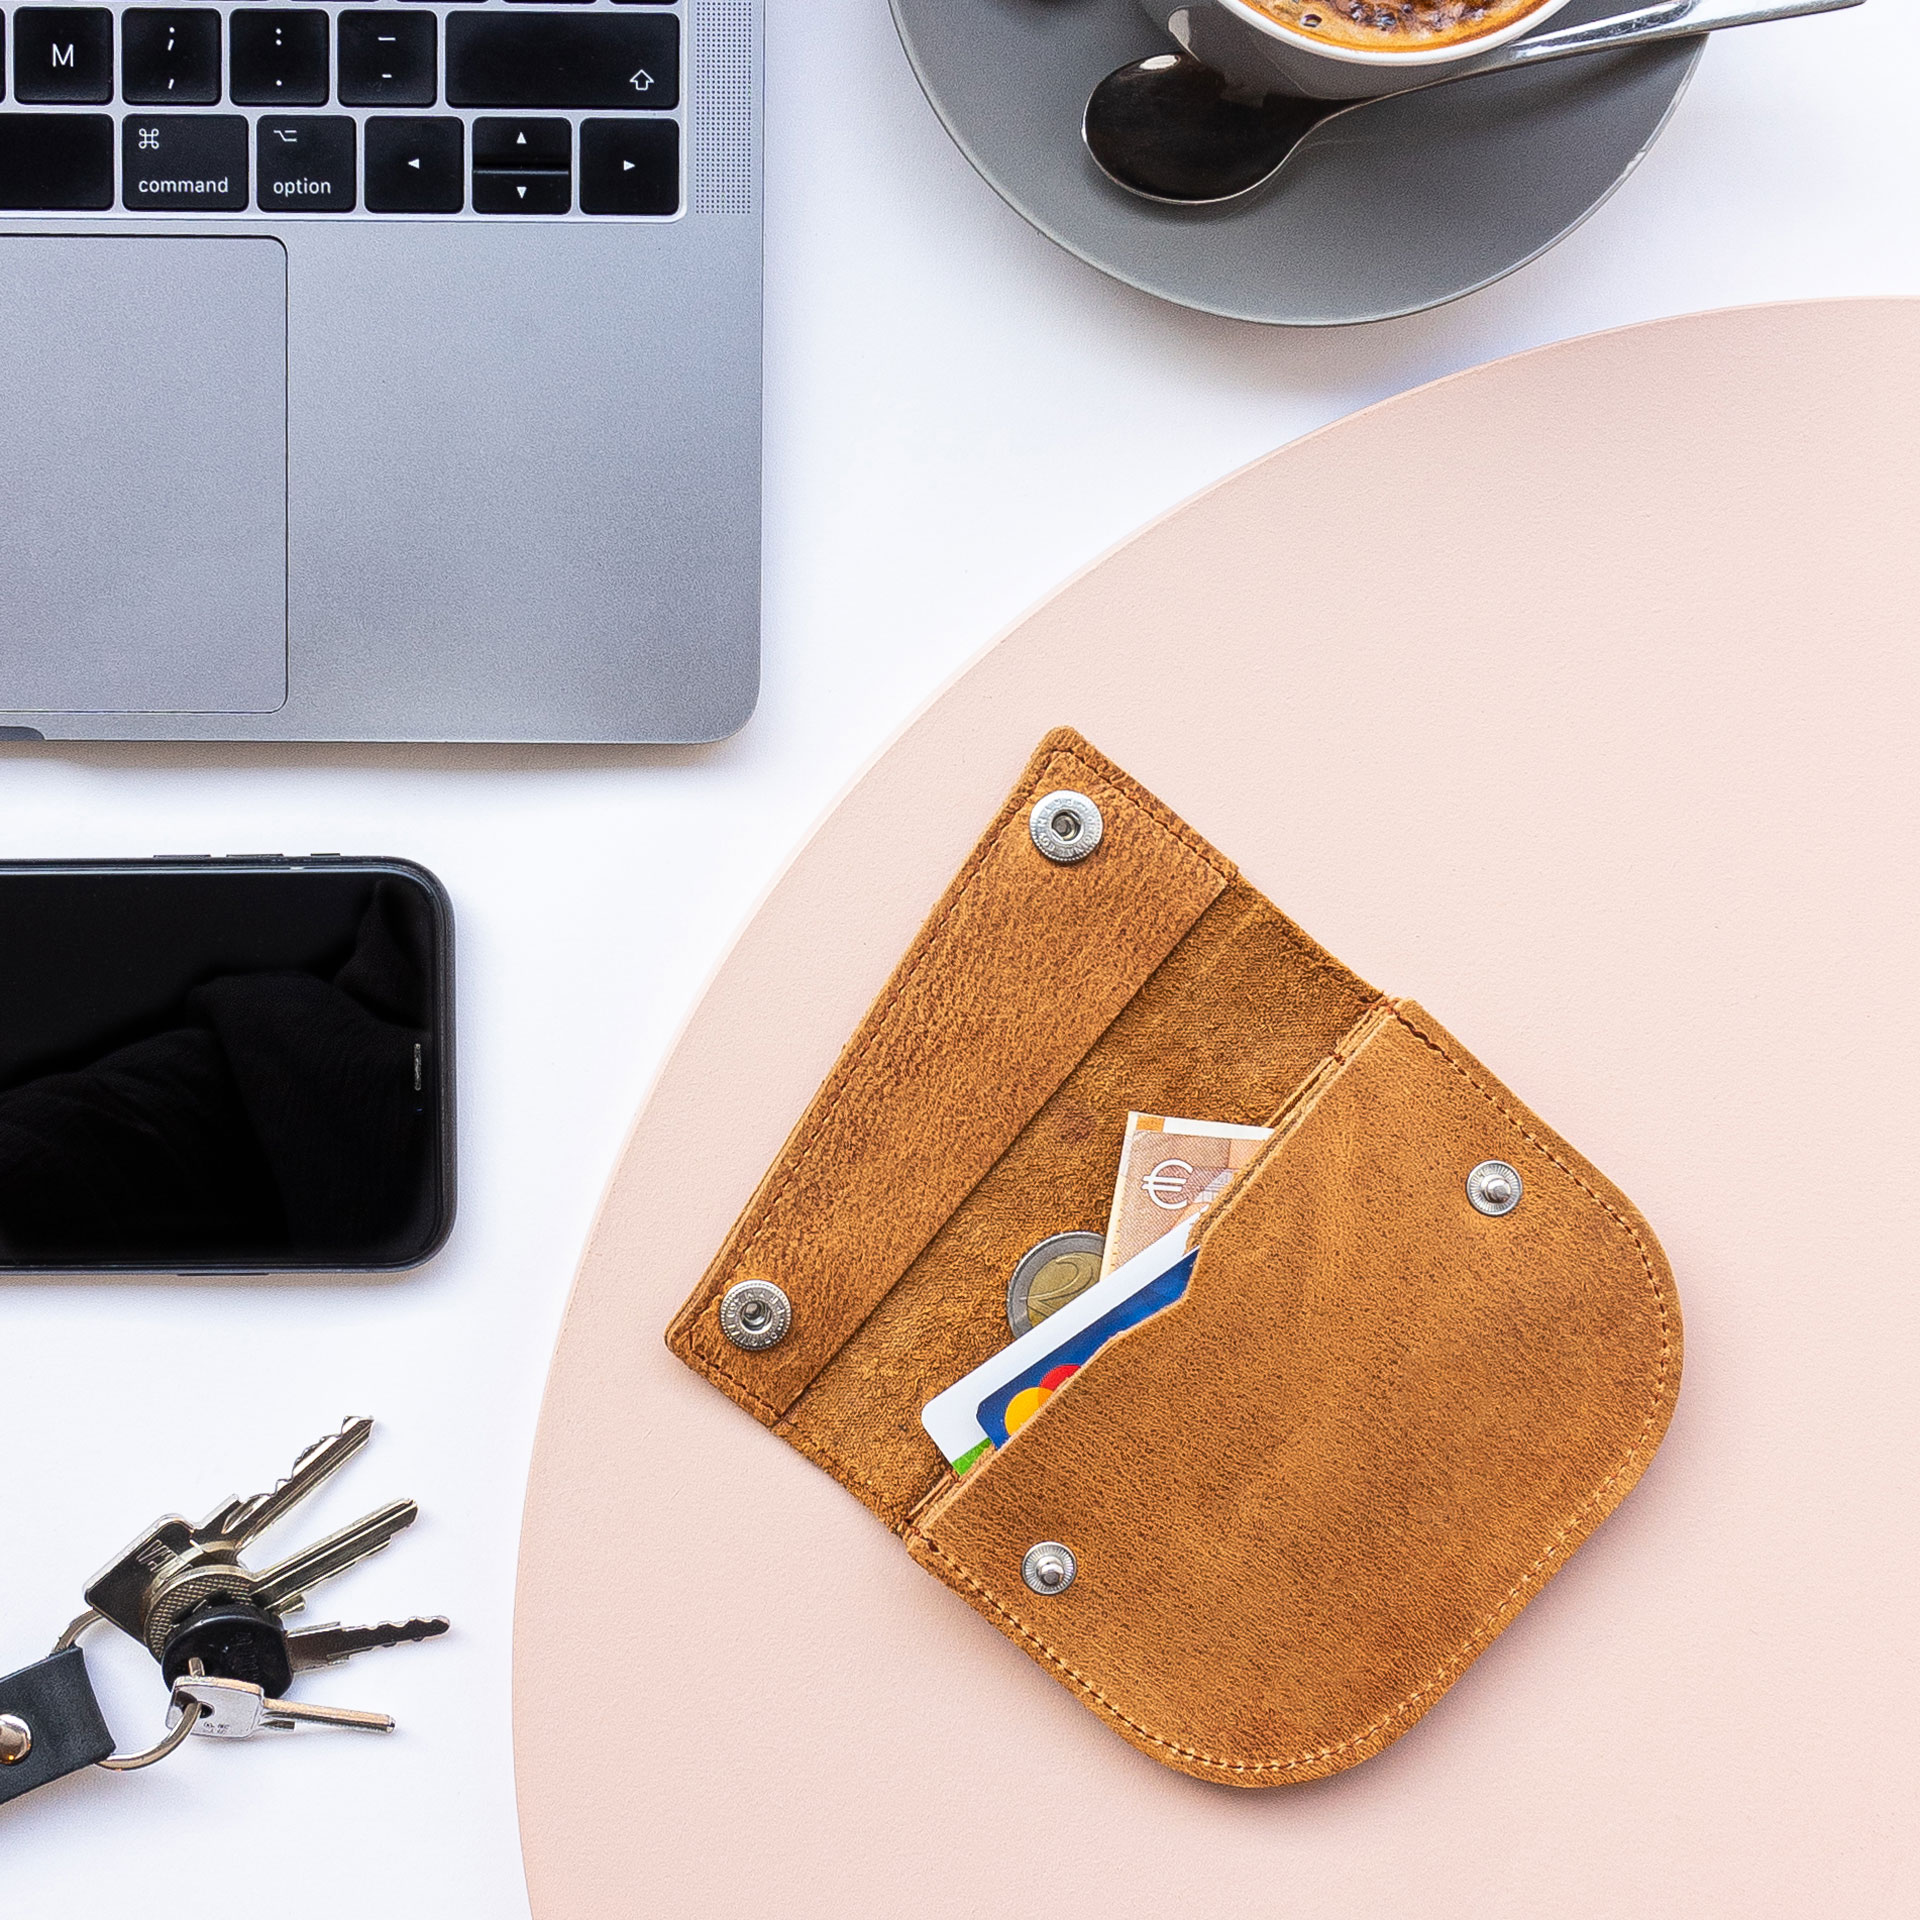 Portemonnaie ENO auf einem Tisch liegen im Größenvergleich mit einem Smartphne, Laptop, Kaffee und Schlüsselbund.